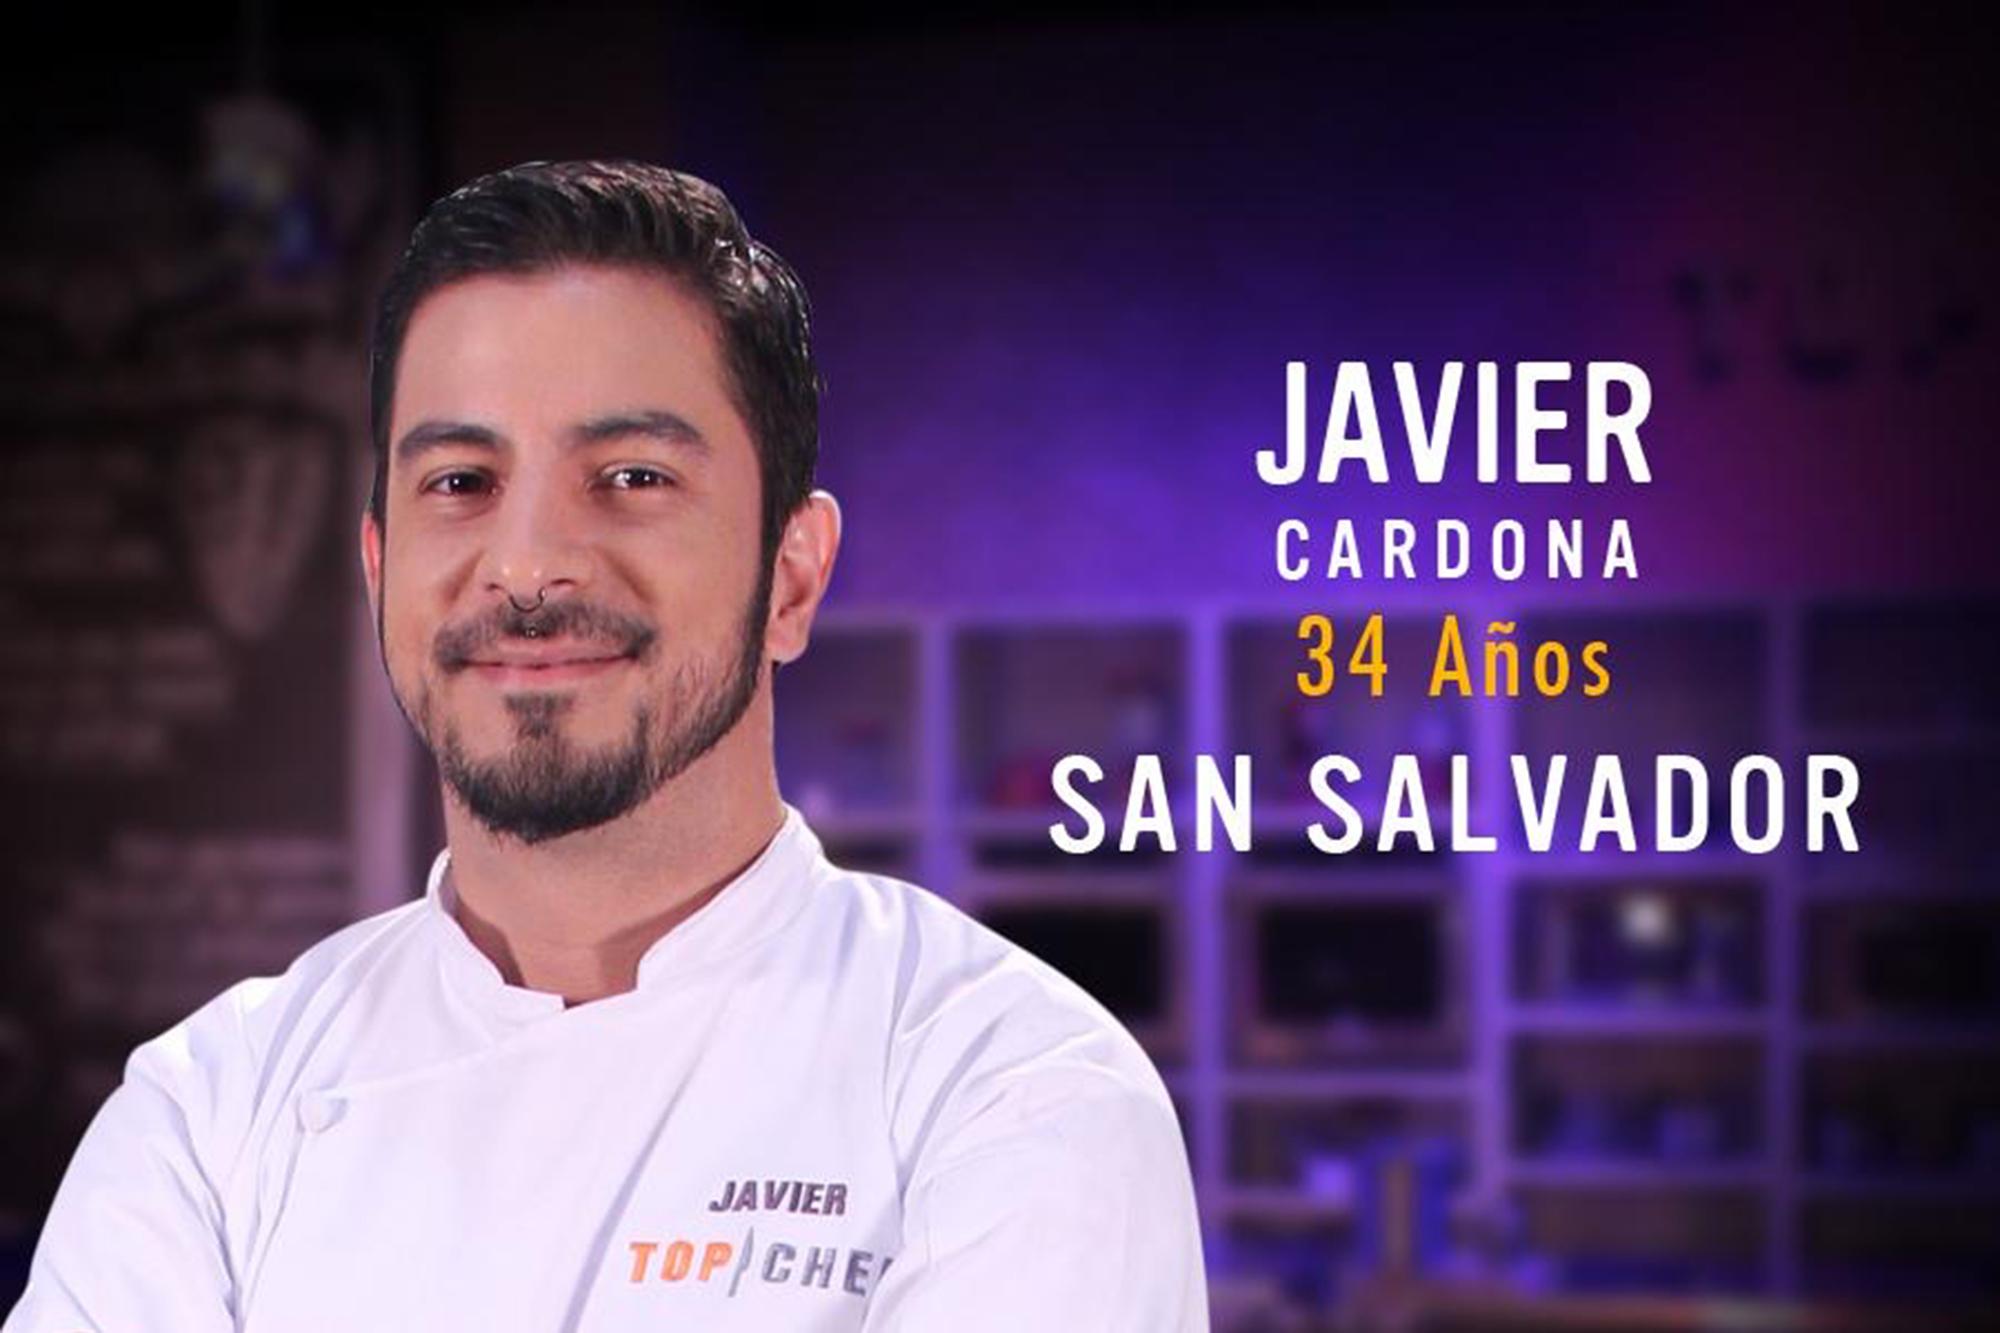 Javier Cardona es chef de profesión y participó en un reality televisivo transmitido por Telecorporación Salvadoreña: Top Chef.